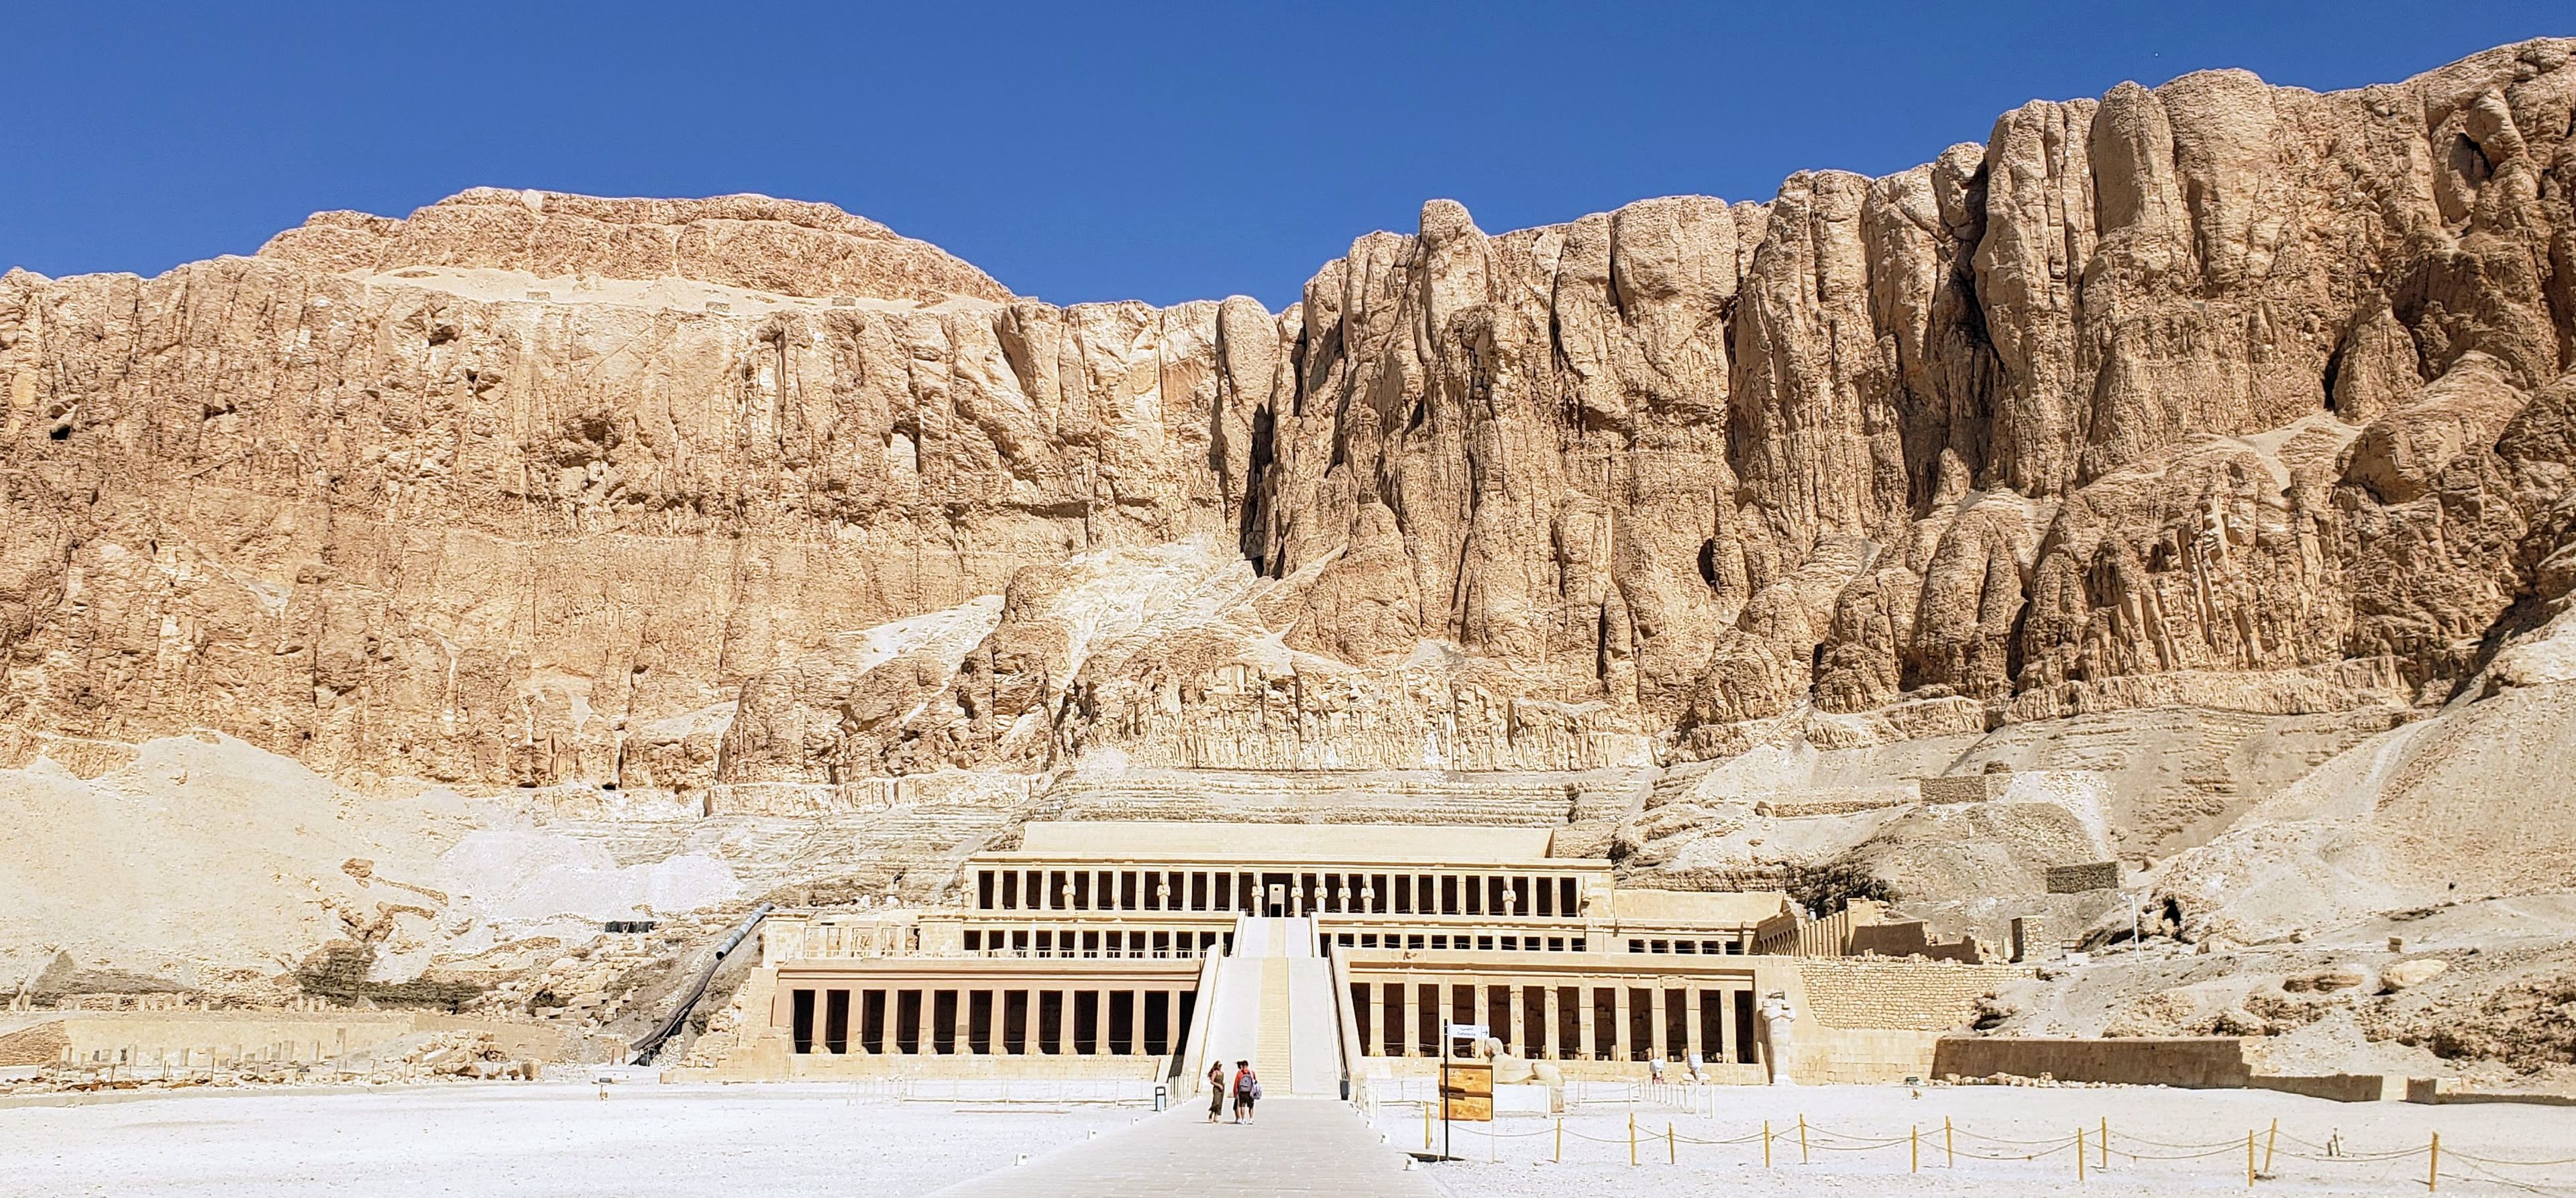 El fabuloso templo de Hatshepsut, construido en la montañña, y dedicado a la Reina-Faraón de le da su nombre, ubicado junto al Valle de los Reyes.